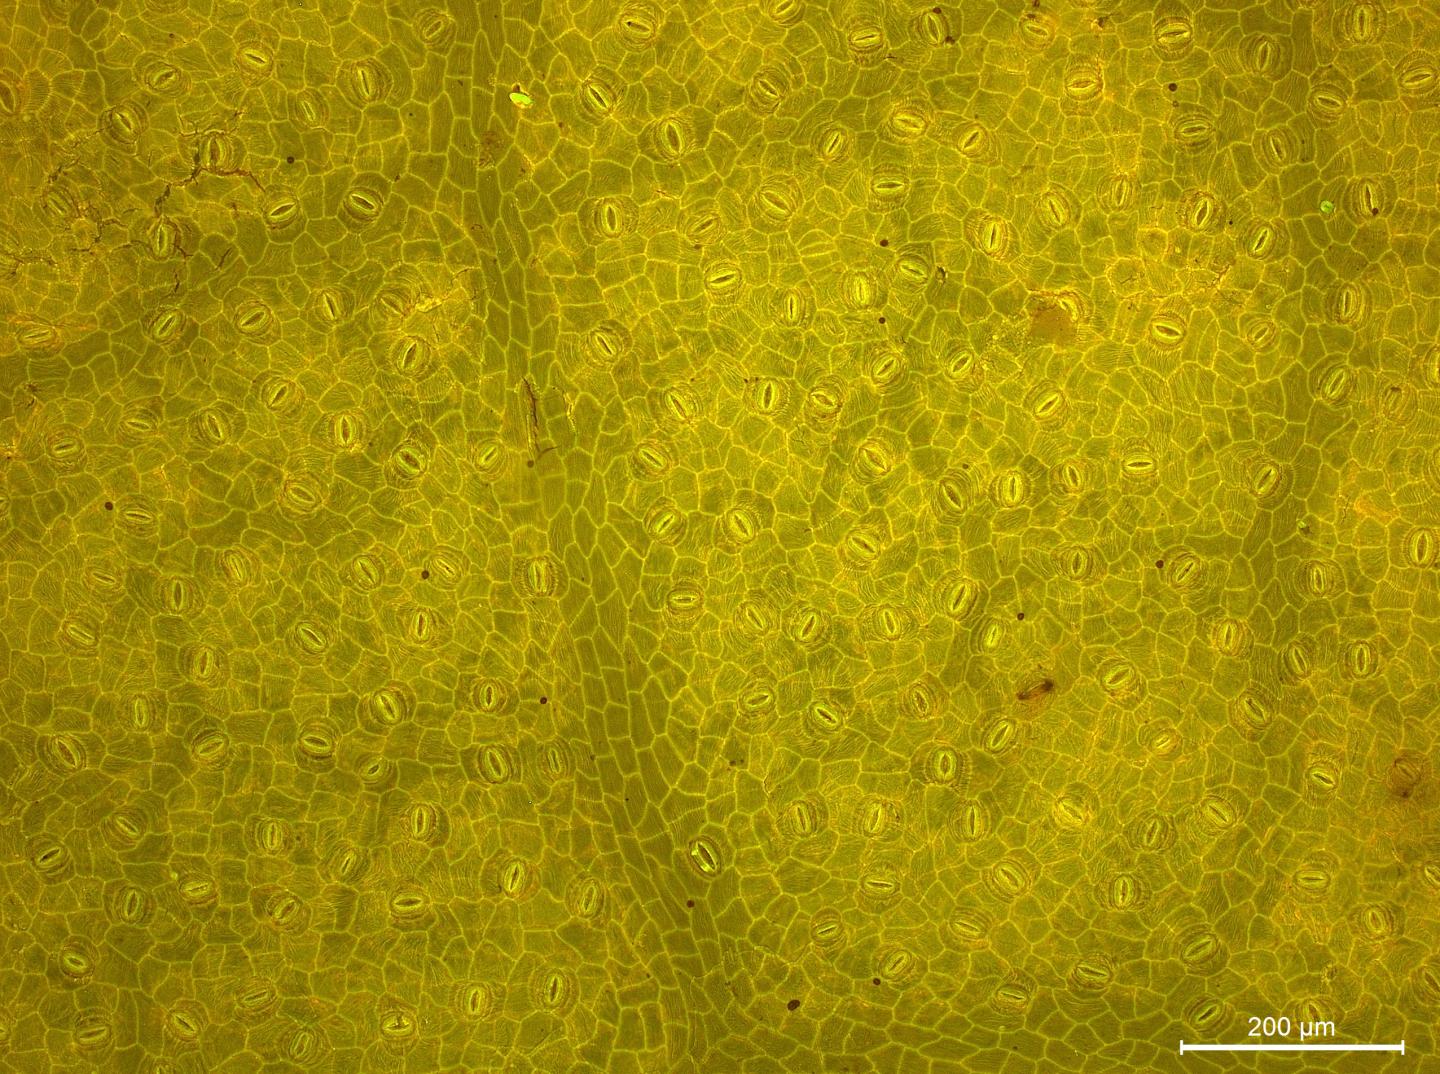 Leaf Pores Clue to Ancient Carbon Dioxide